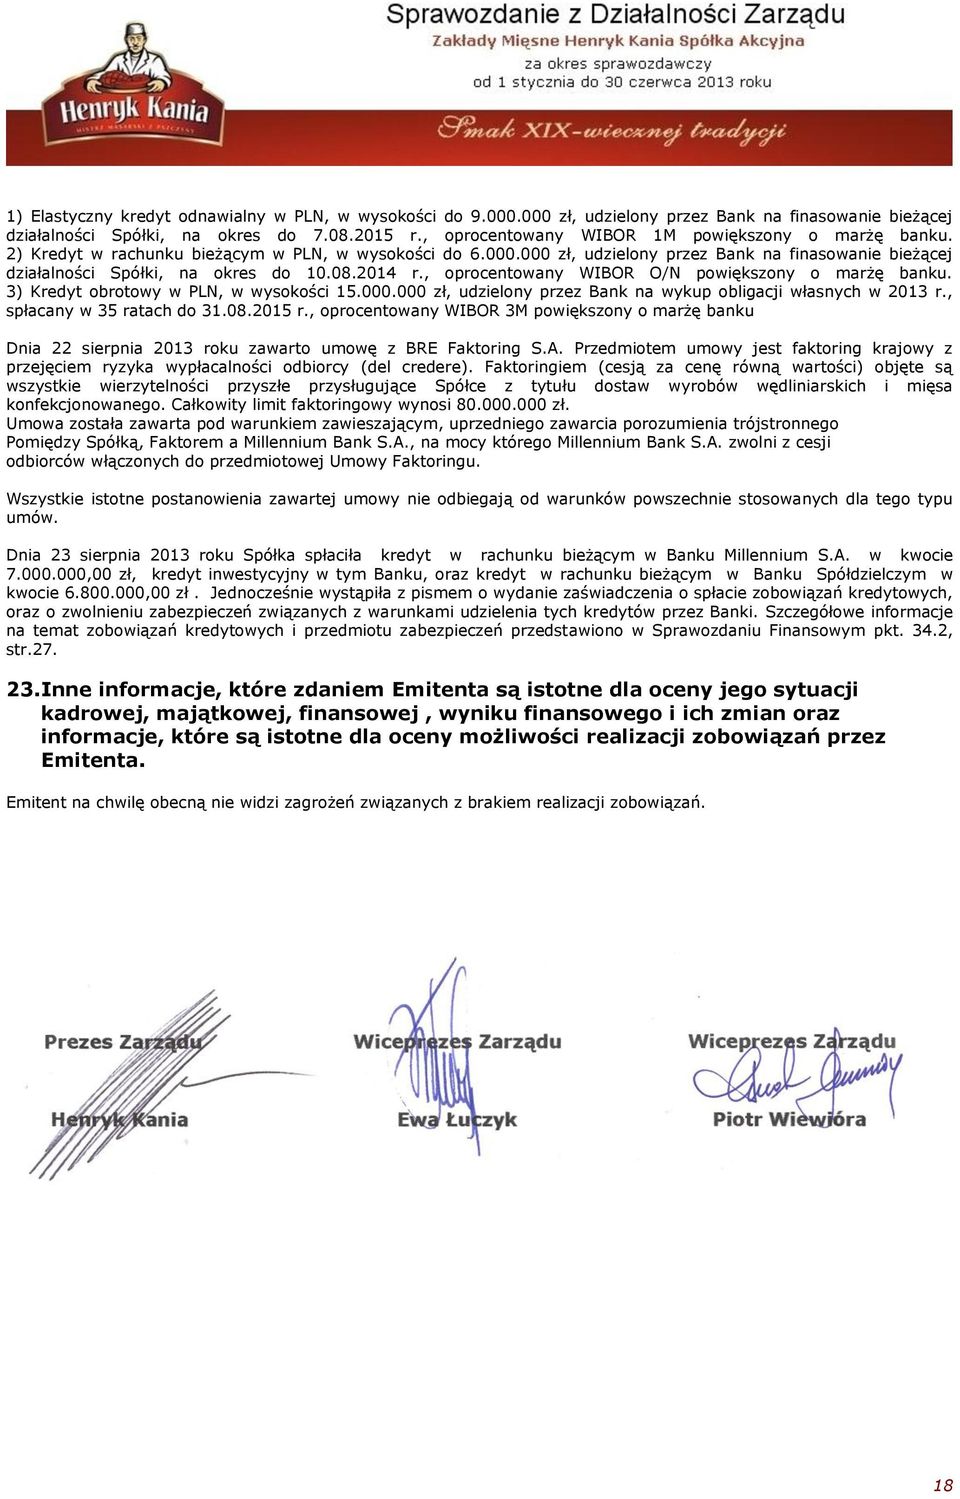 08.2014 r., oprocentowany WIBOR O/N powiększony o marżę banku. 3) Kredyt obrotowy w PLN, w wysokości 15.000.000 zł, udzielony przez Bank na wykup obligacji własnych w 2013 r.